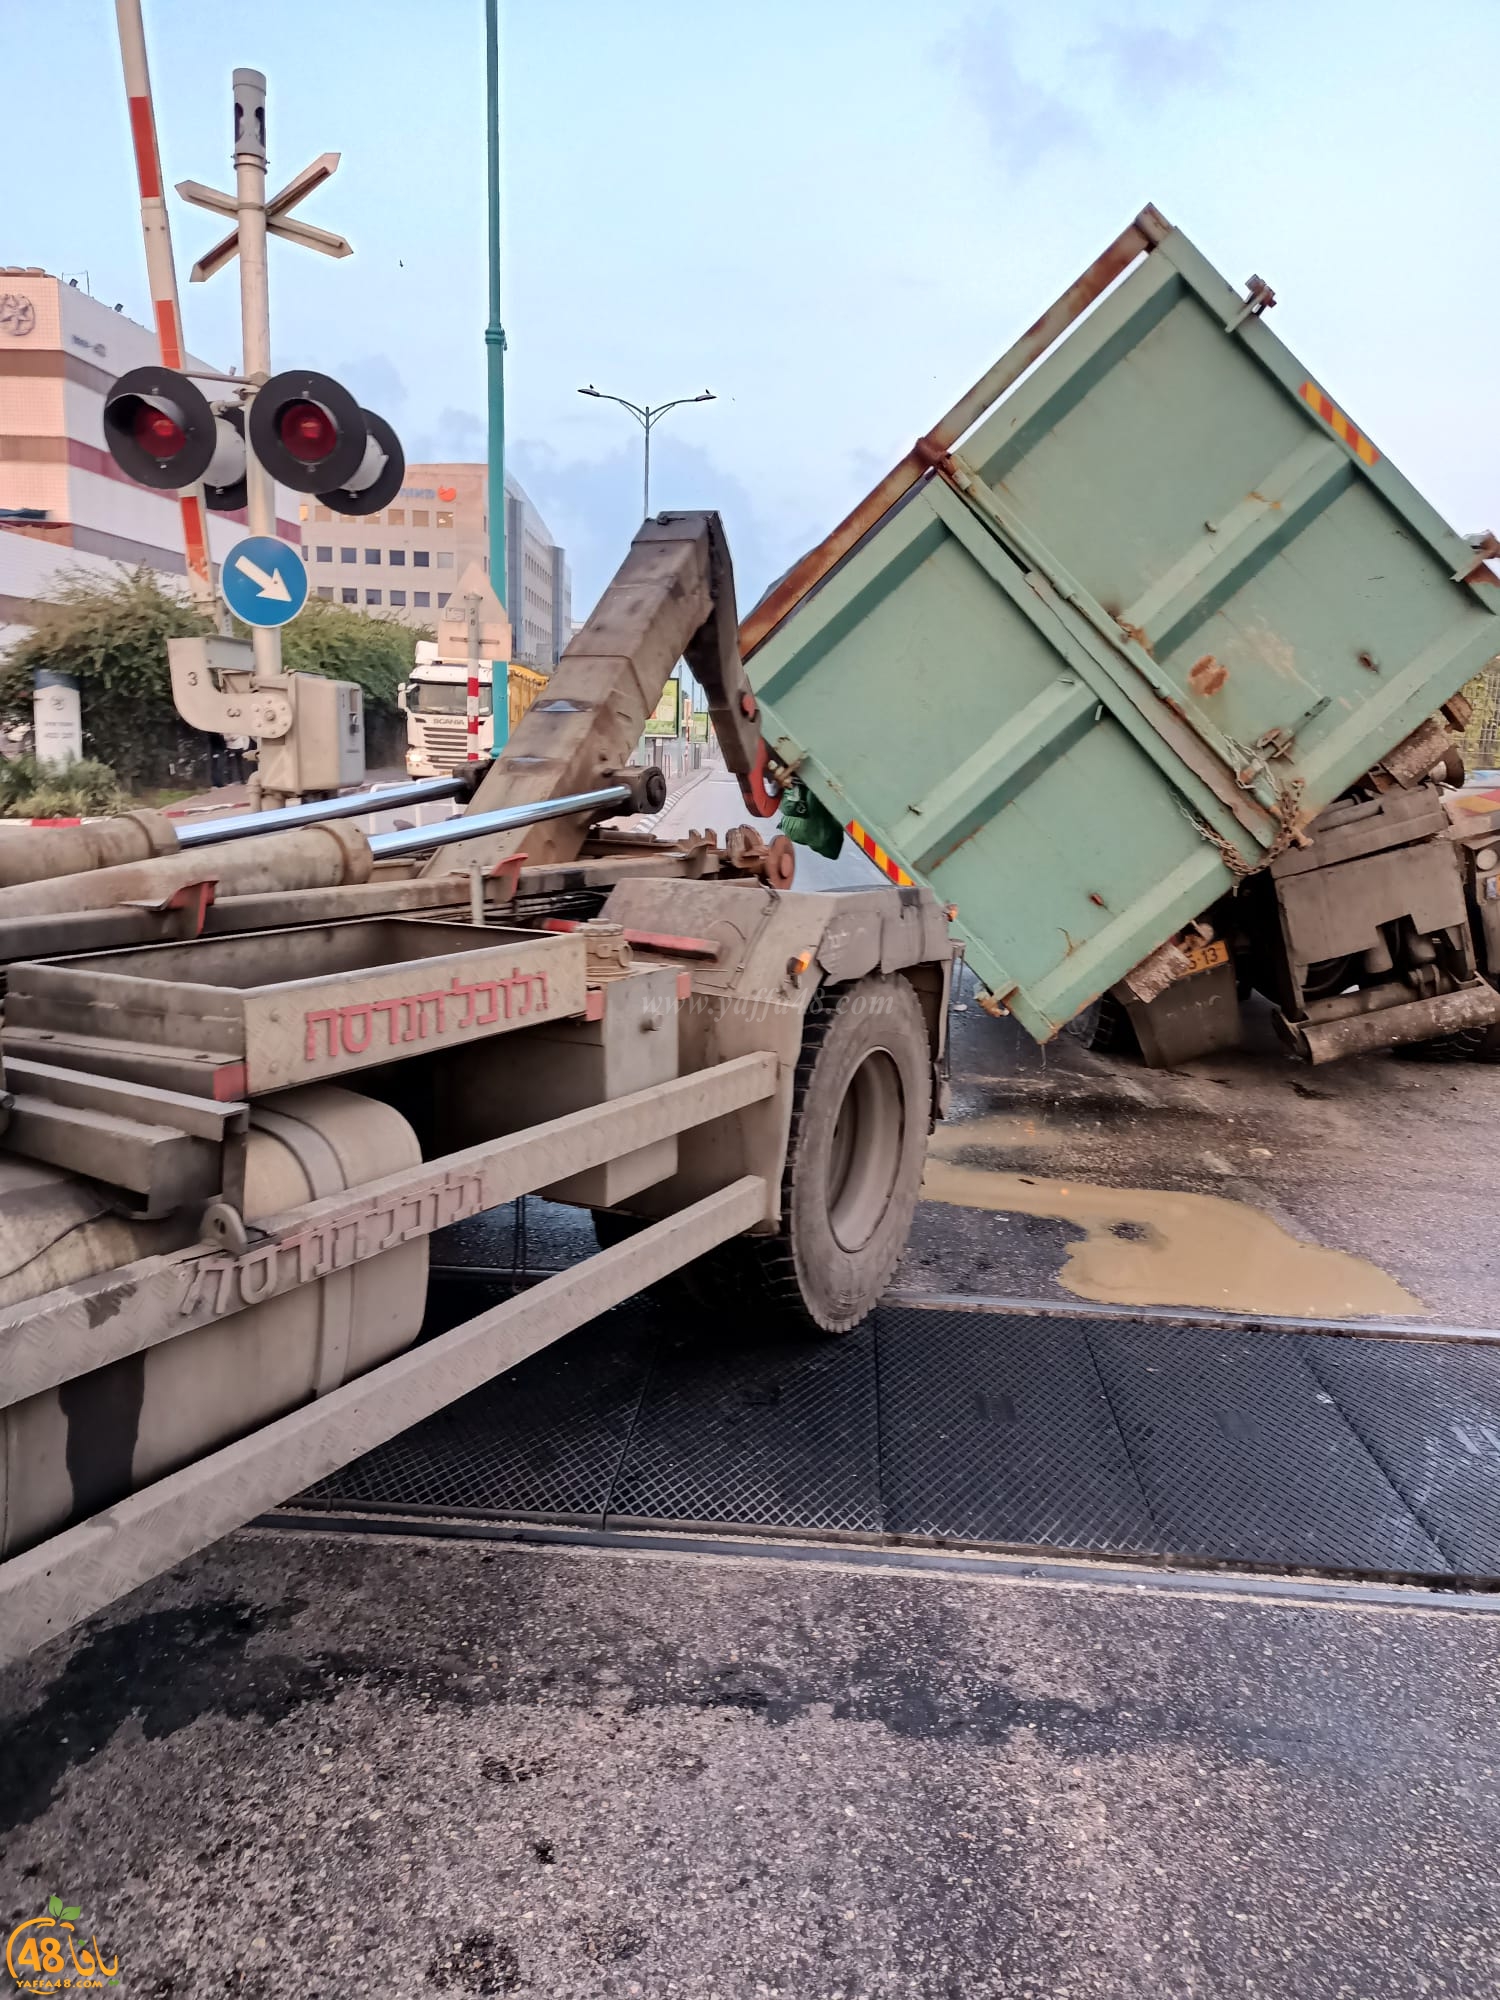  اللد: سقوط حمولة شاحنة في مدخل المدينة دون اصابات